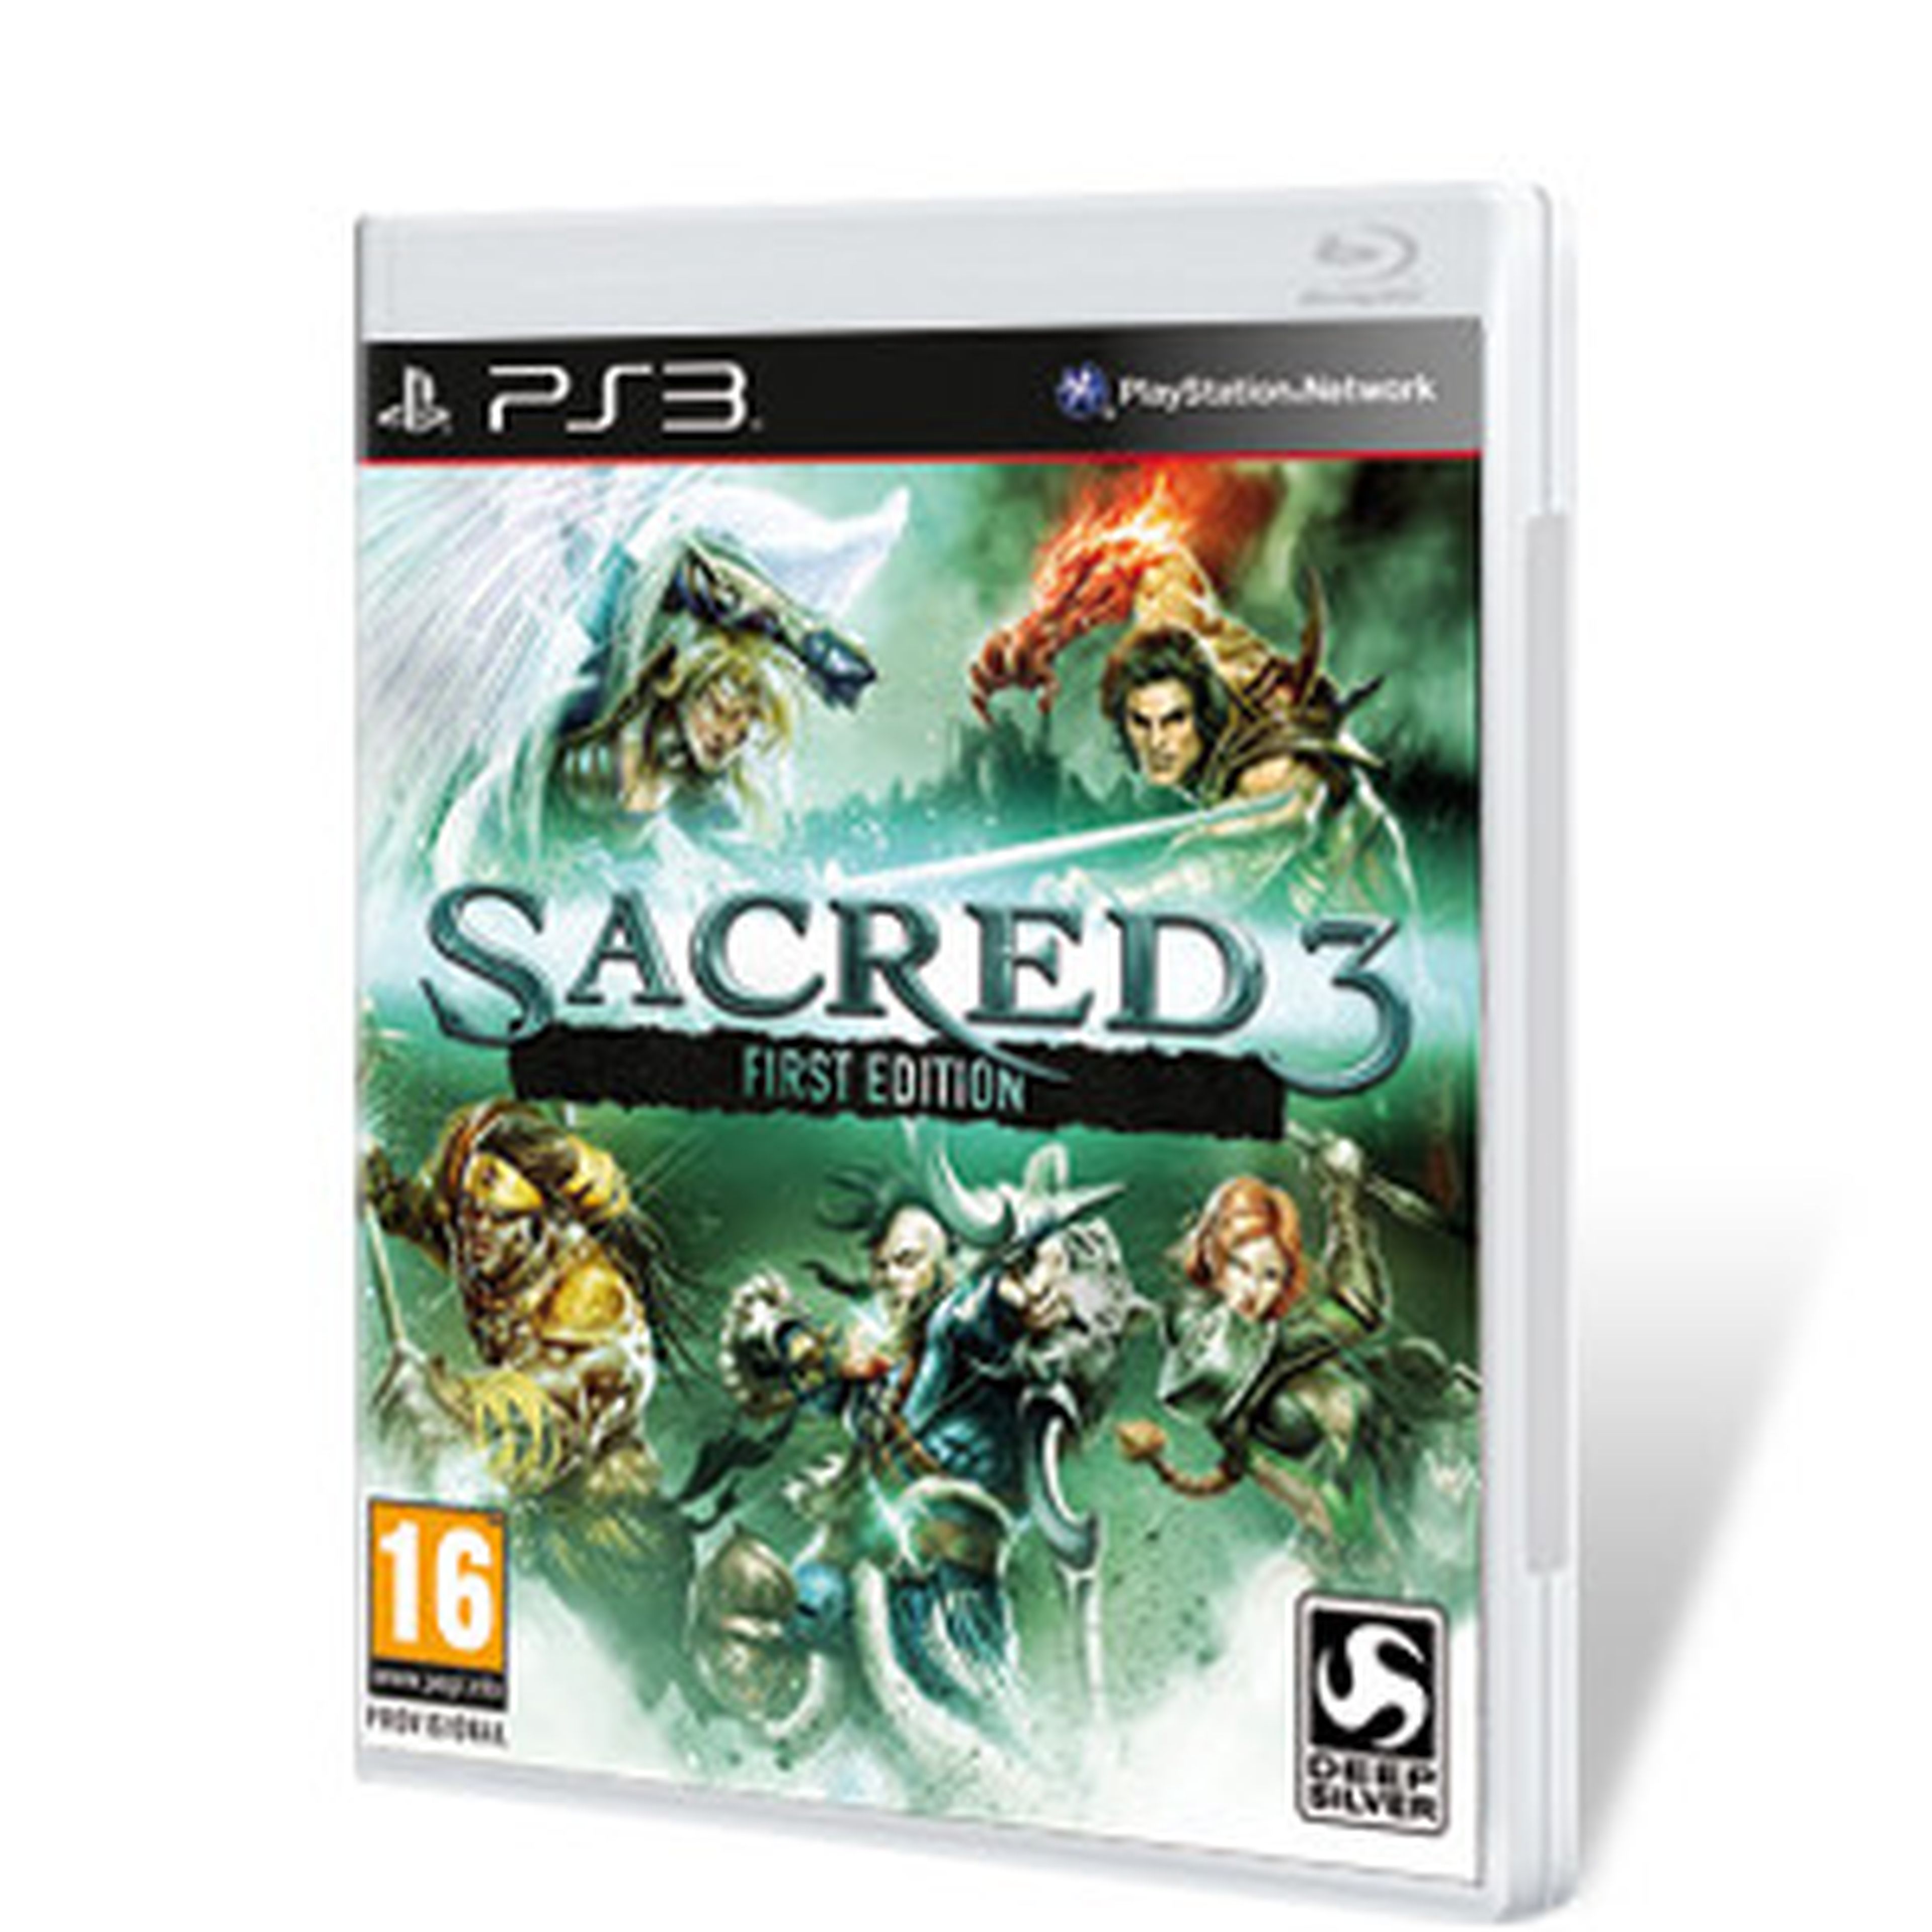 Sacred 3 para PS3